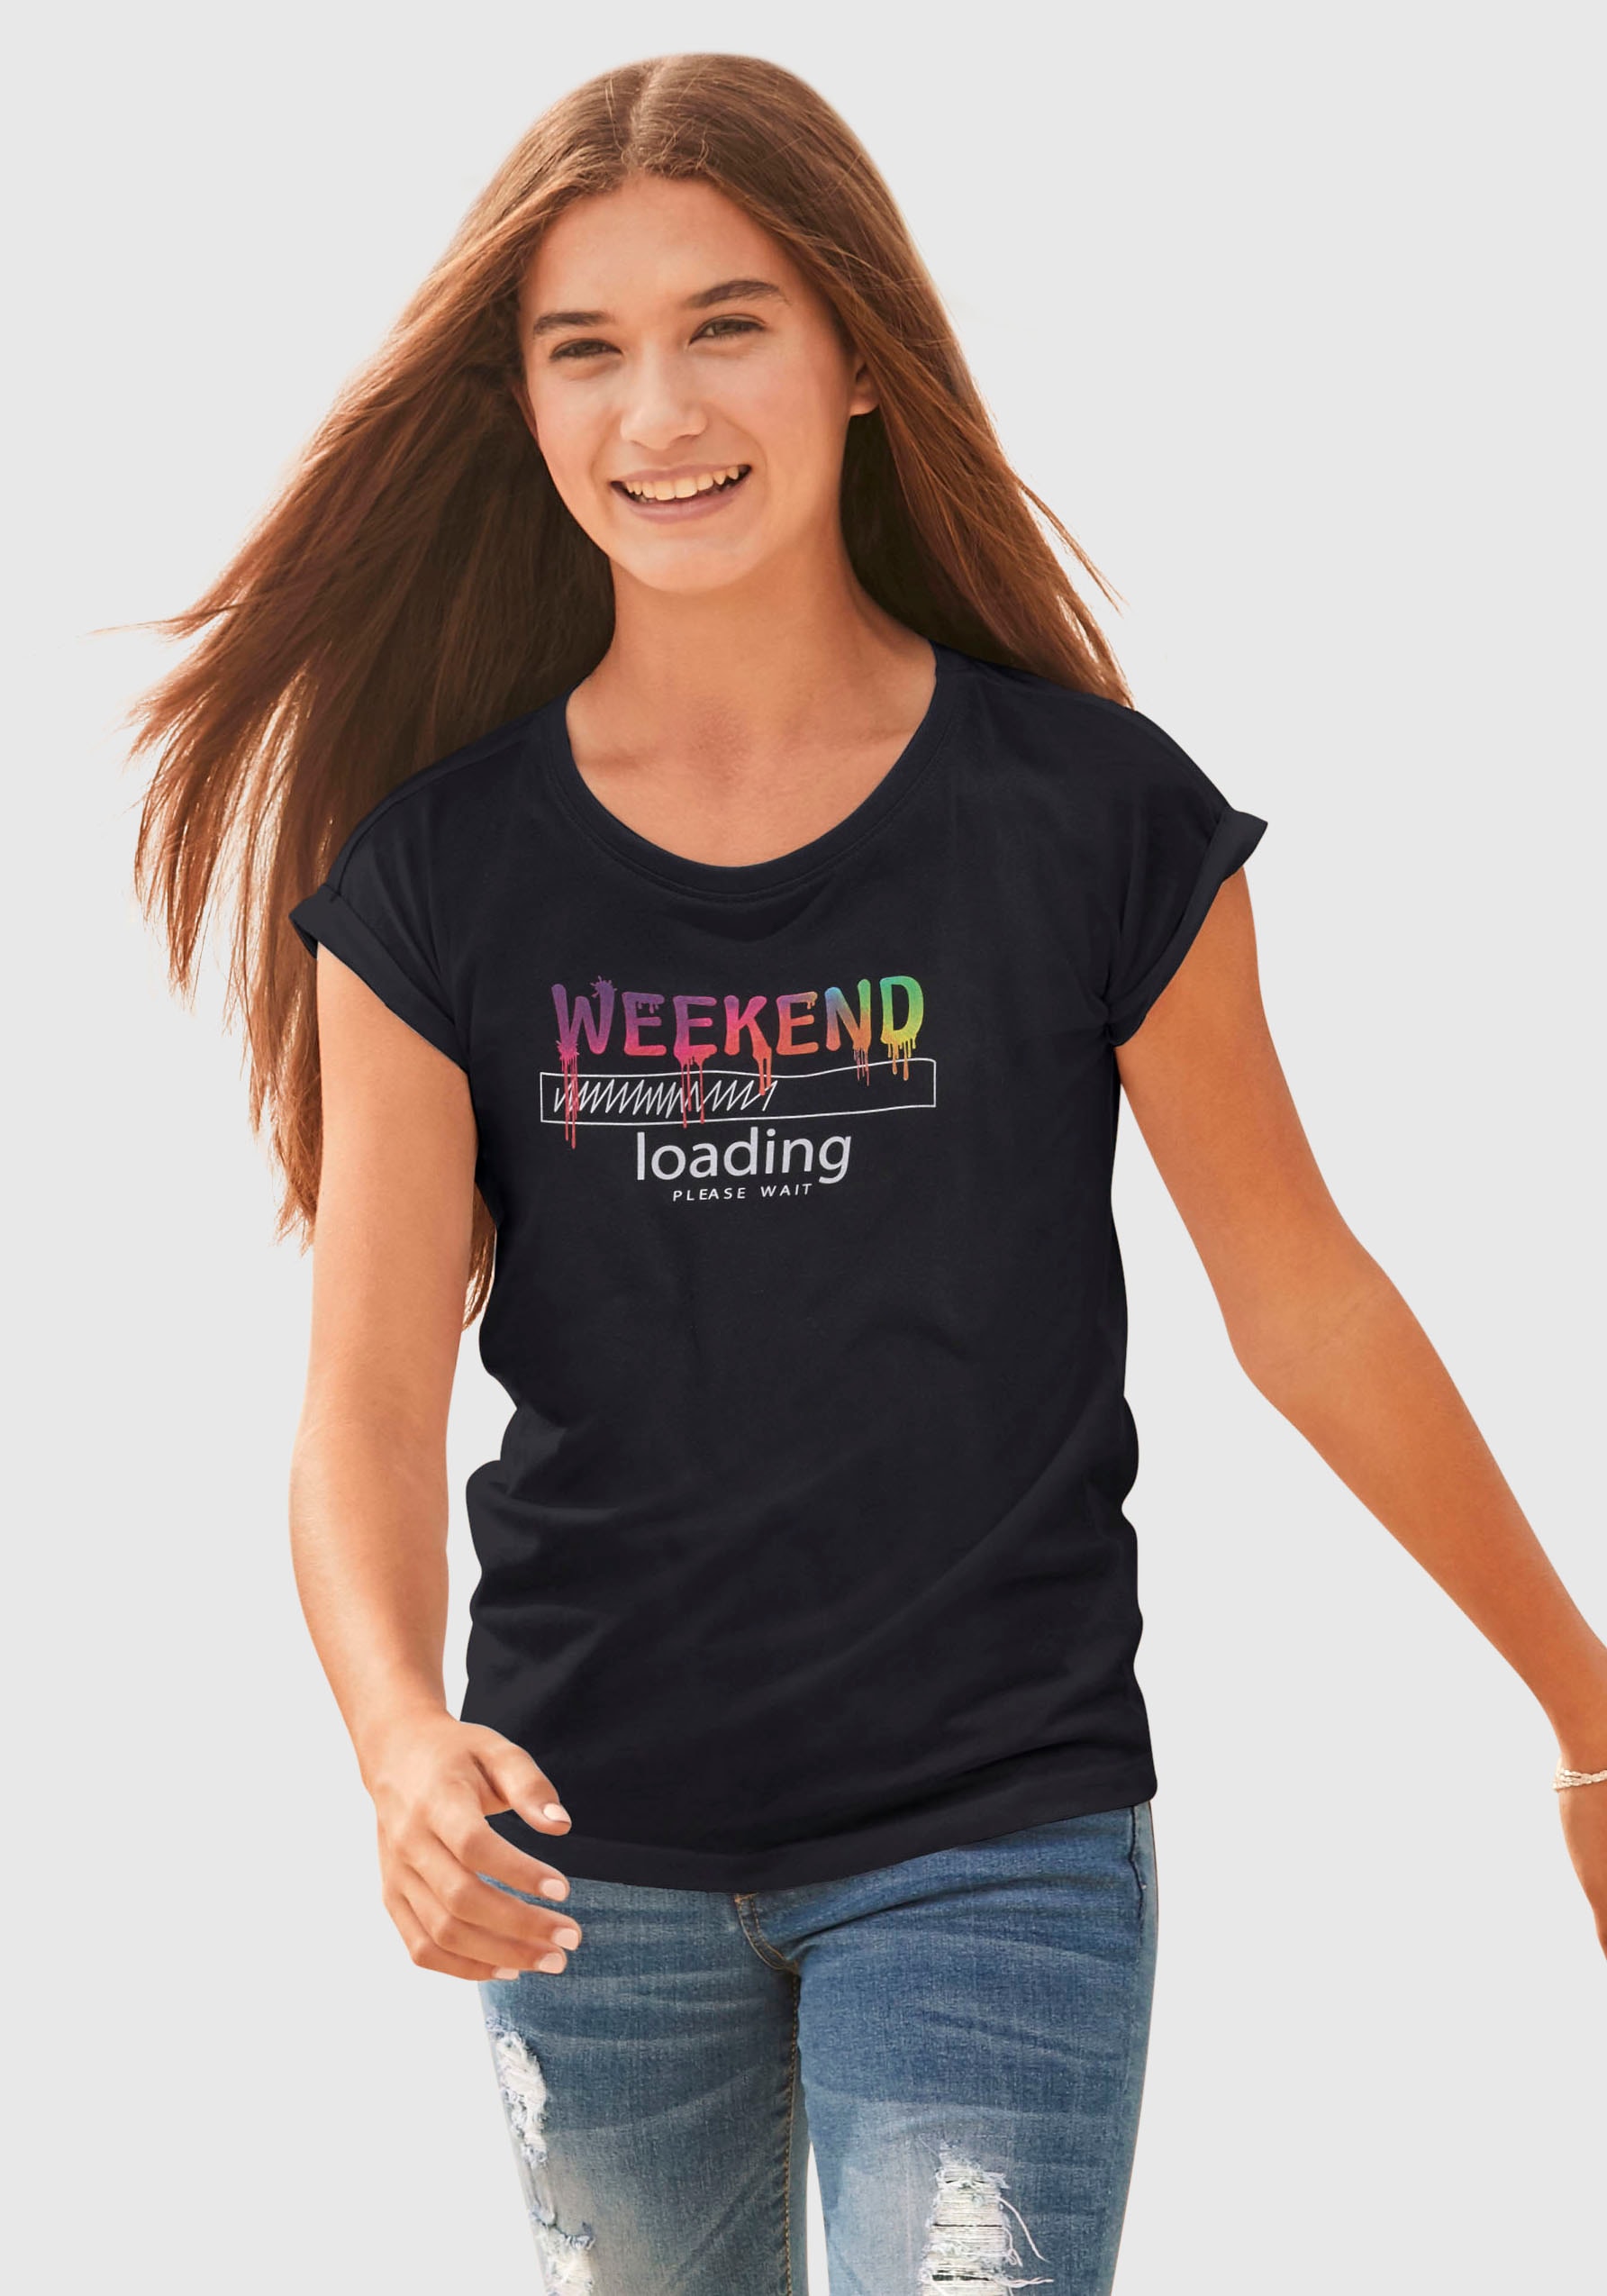 KIDSWORLD T-Shirt »WEEKEND loading...please wait«, in weiter legerer Form, Regenbogen-Druckfarben sind unterschiedlich